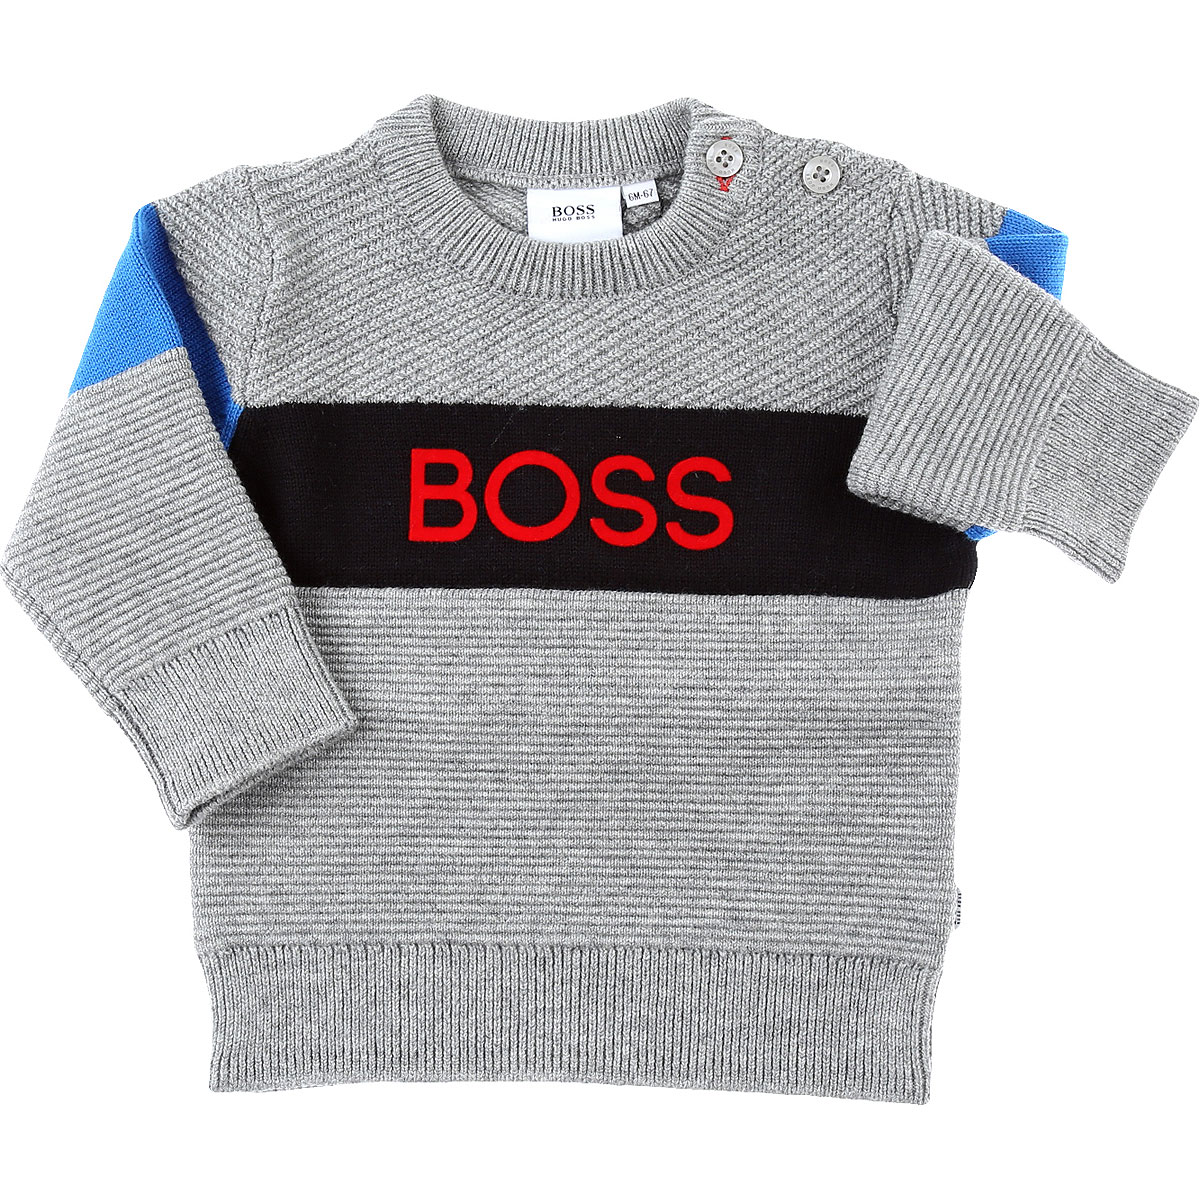 Hugo Boss Baby Pullover für Jungen Günstig im Sale, Grau, Baumwolle, 2017, 18M 2Y 3Y 6M 9M